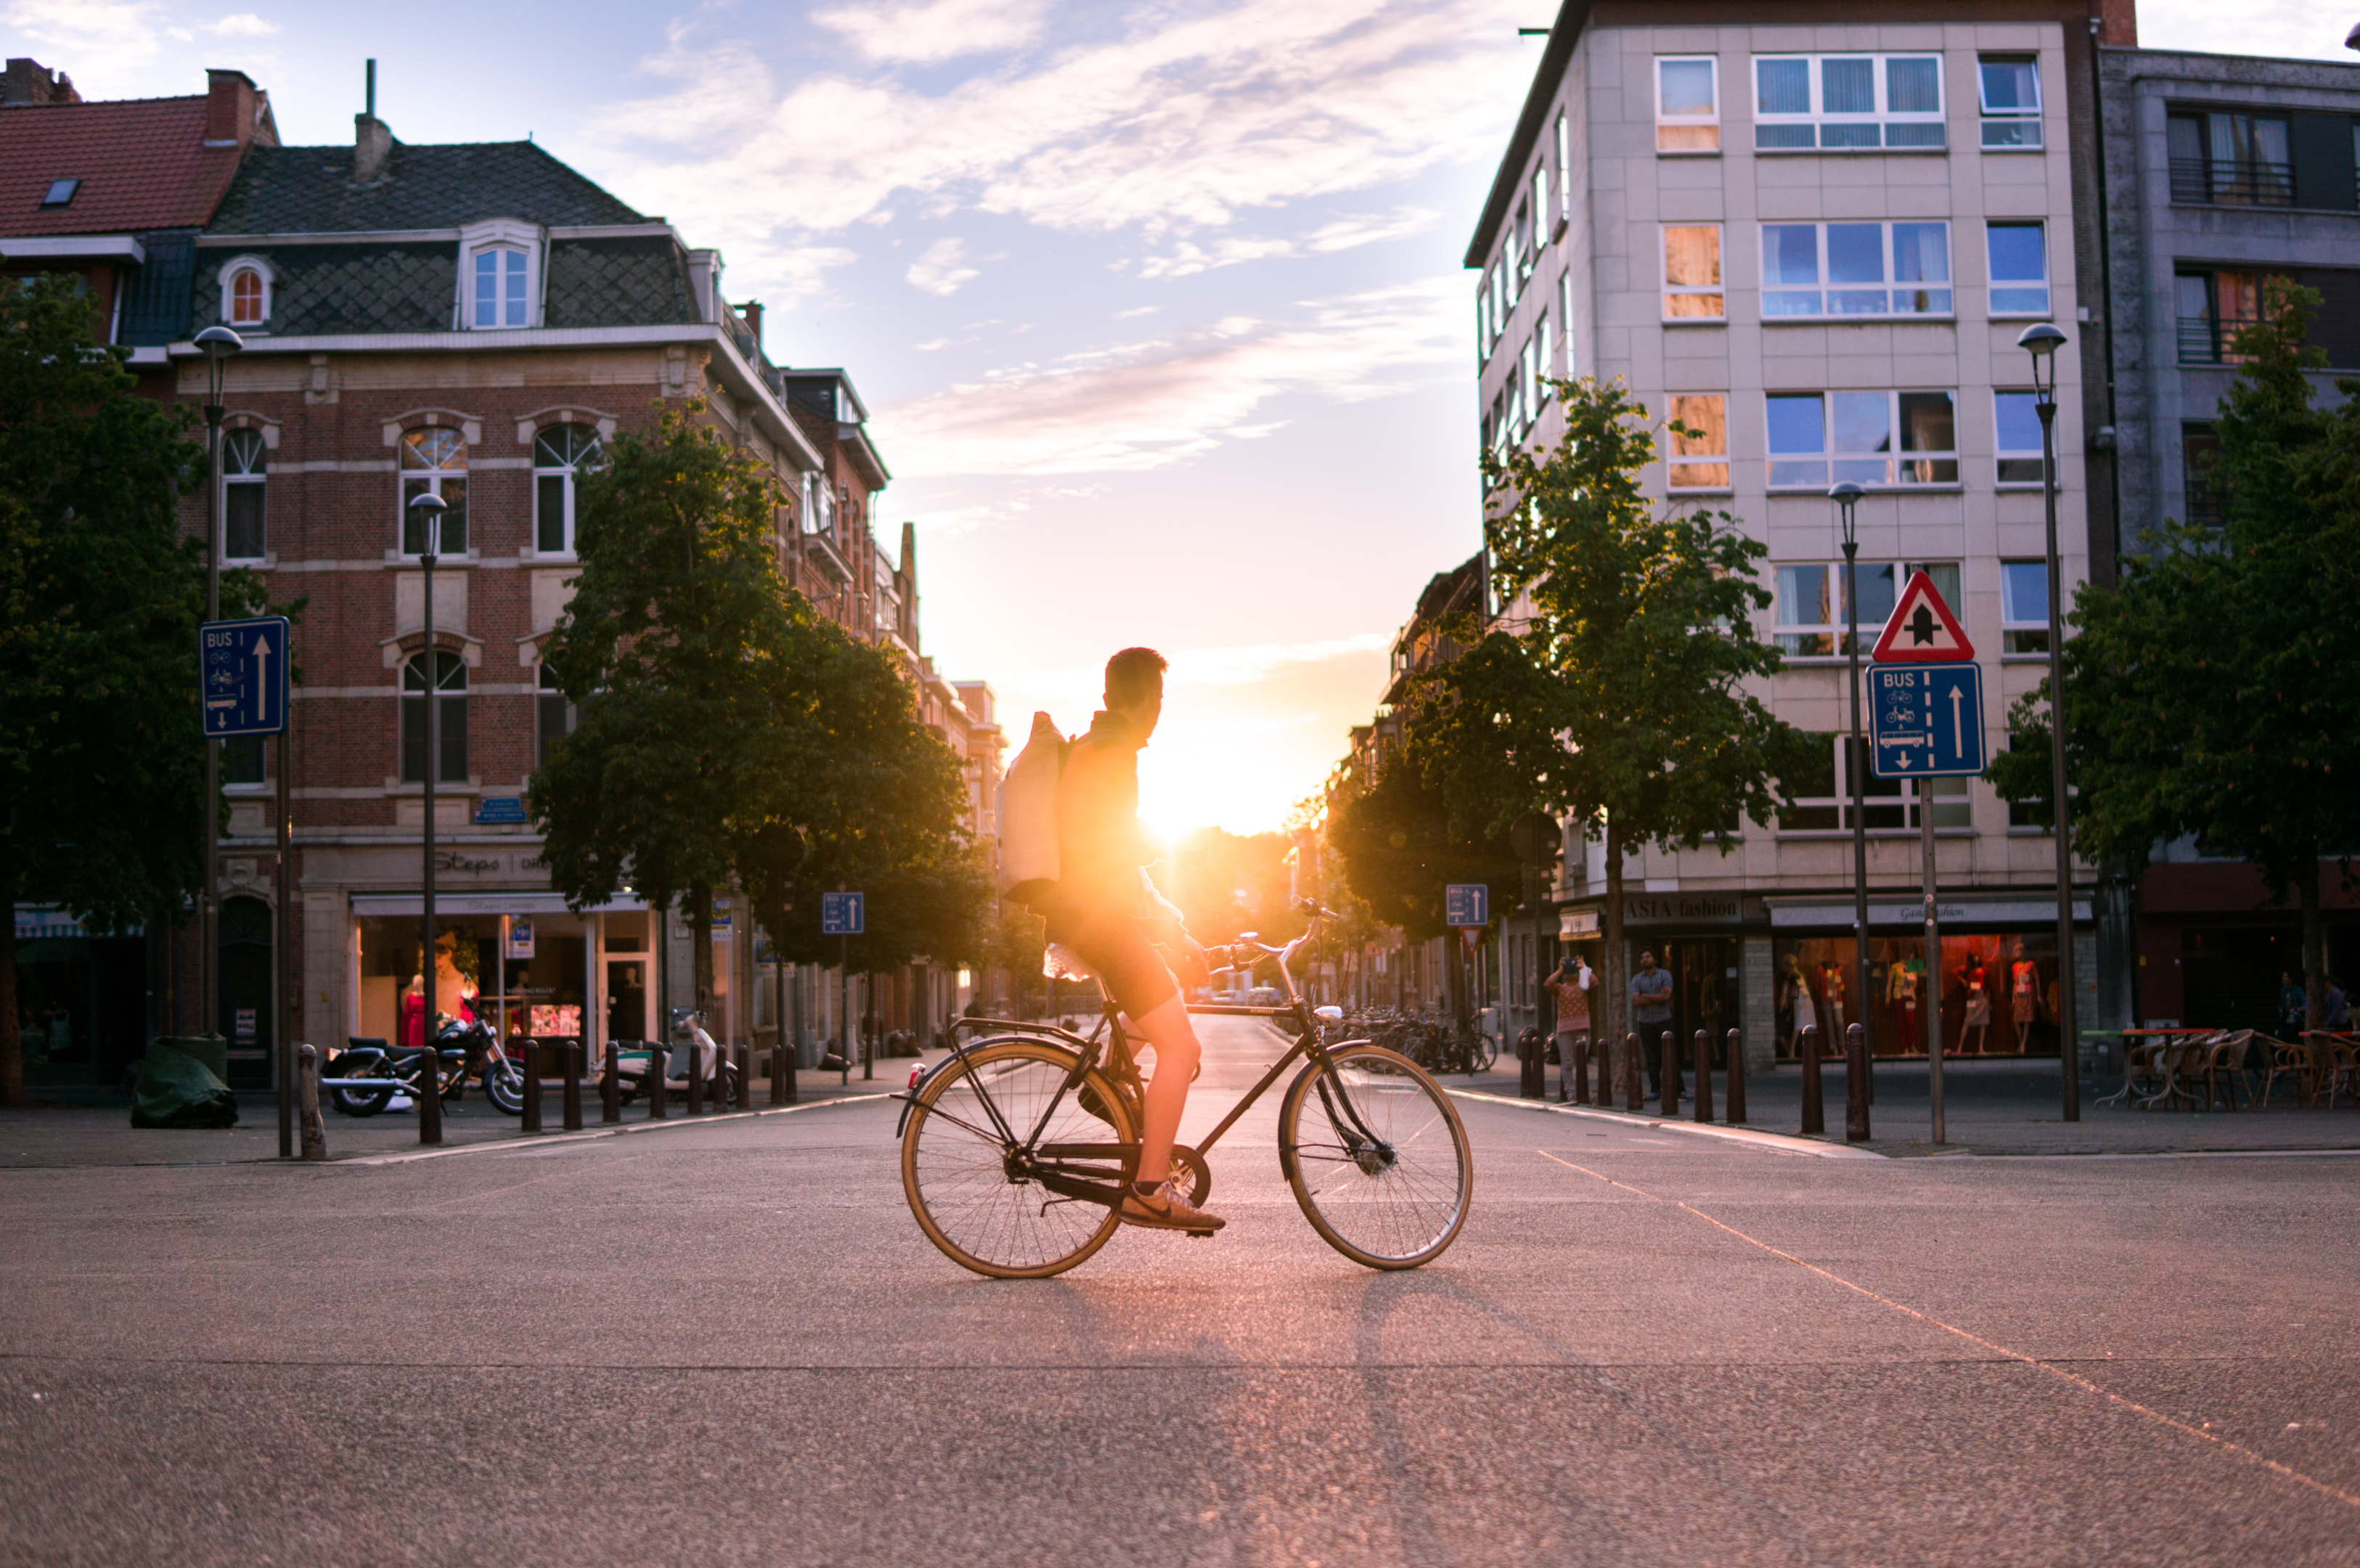 Bike sendo usada em ambiente urbano, mais fechado. Créditos: Unsplash, Tobias Cornille